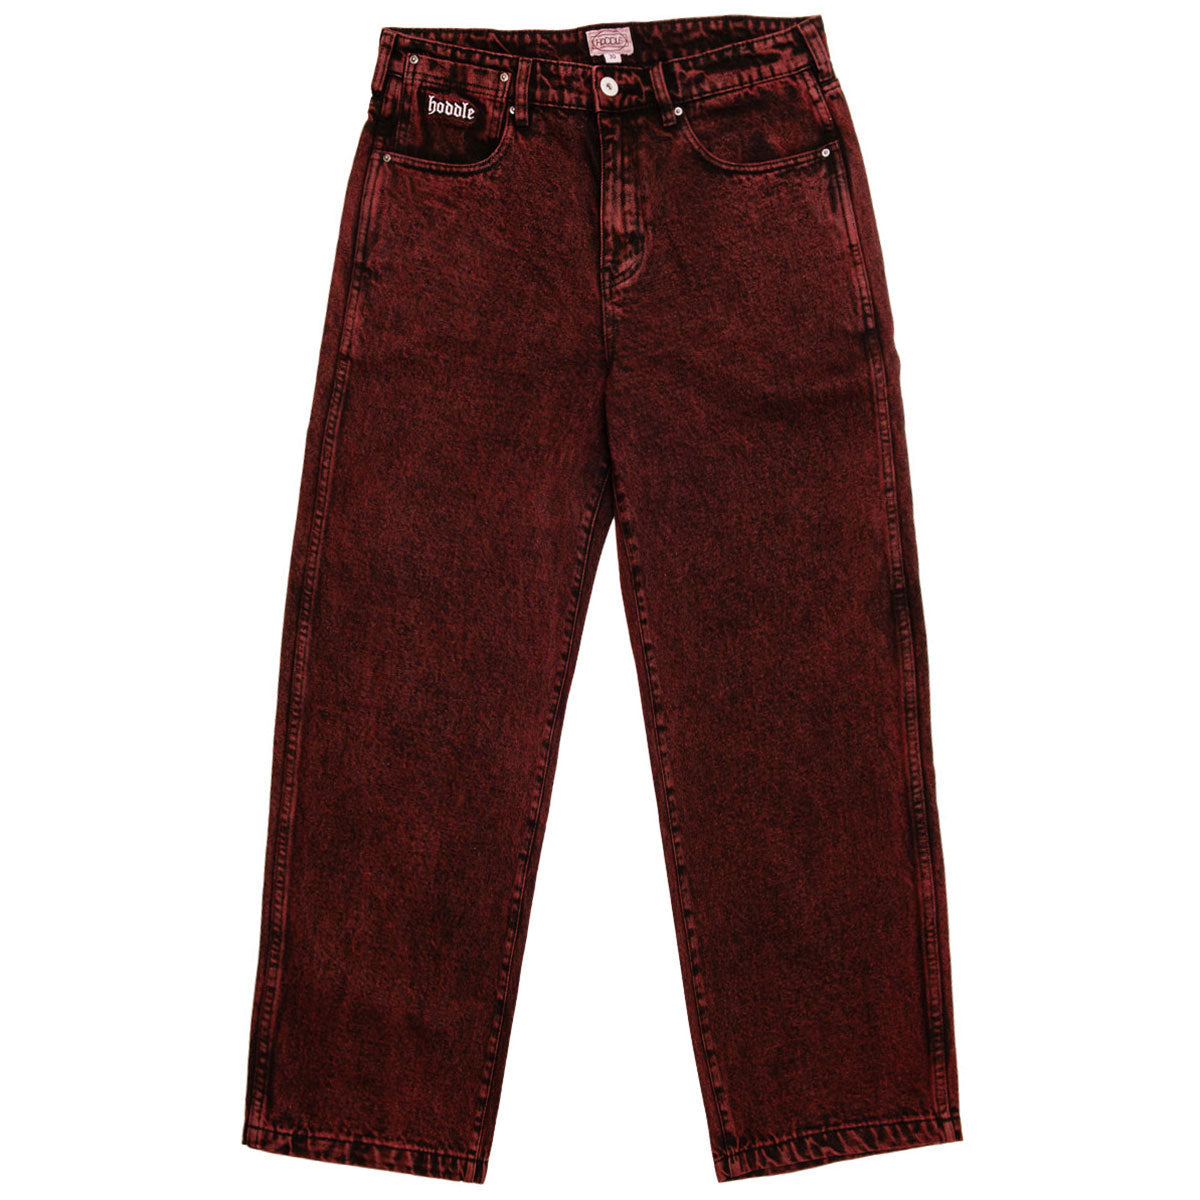 Hoddle 16o Denim Ranger Jeans - Red Wash image 1